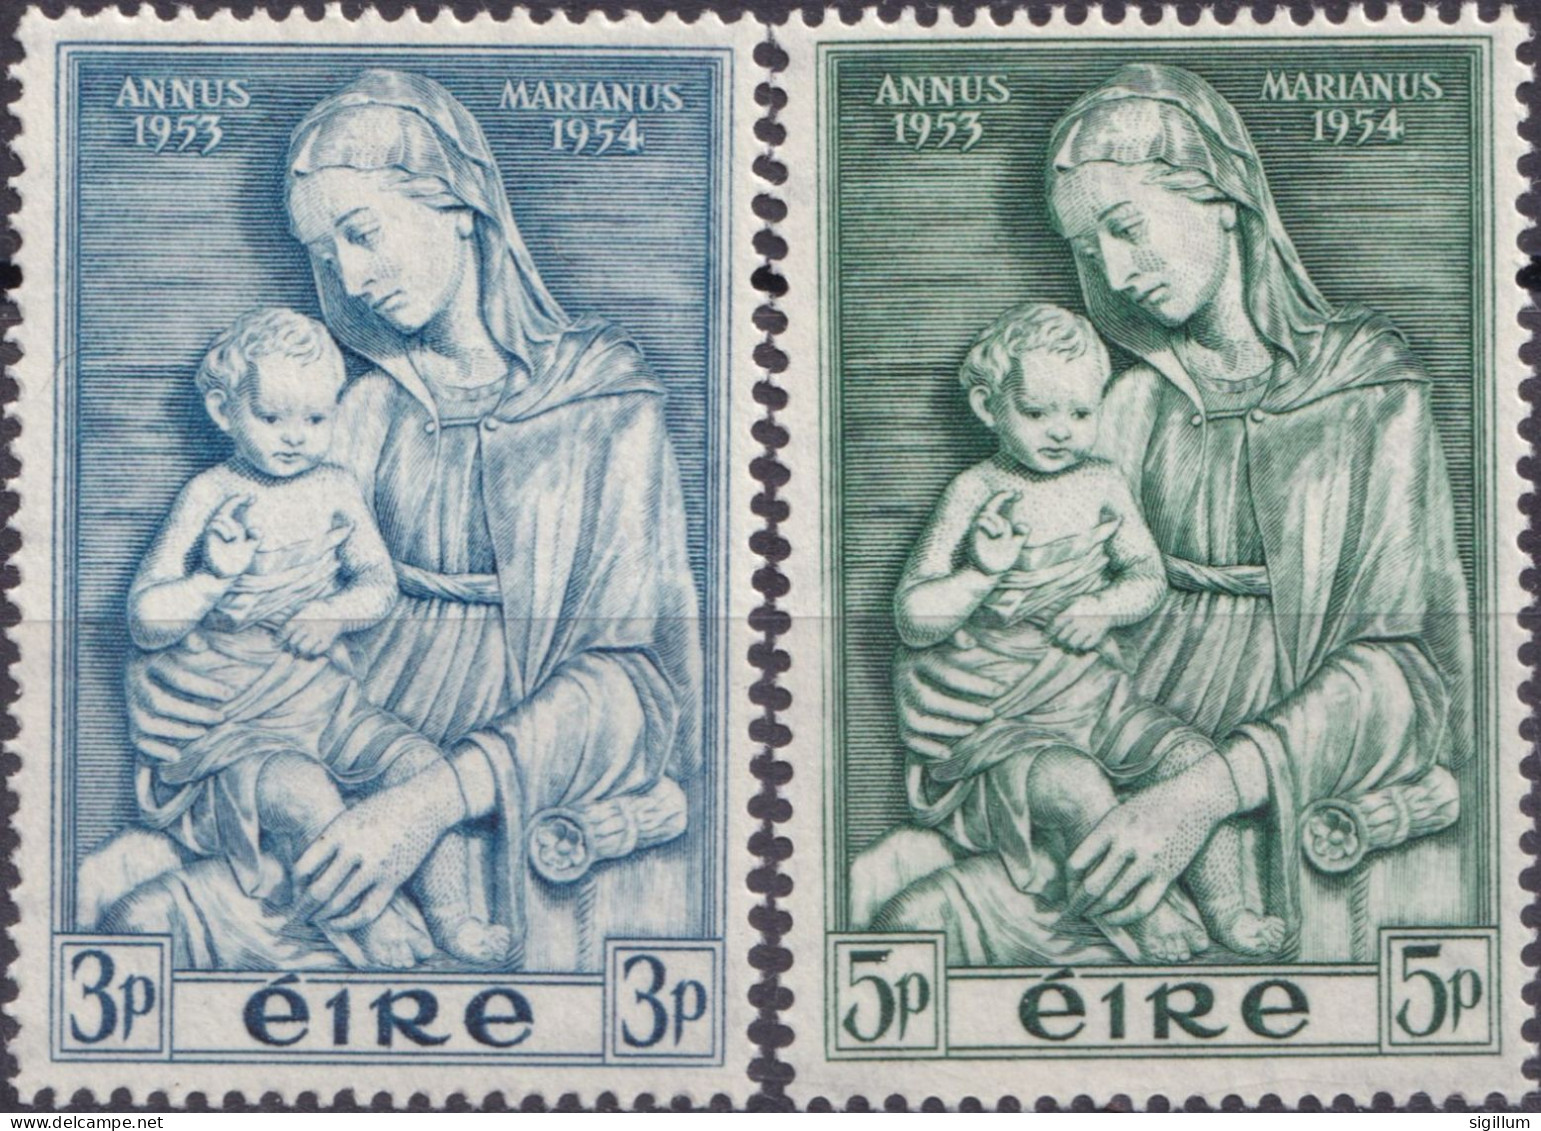 IRLANDA 1950 - ANNO MARIANO - SERIE COMPLETA NUOVA MLH - Unused Stamps